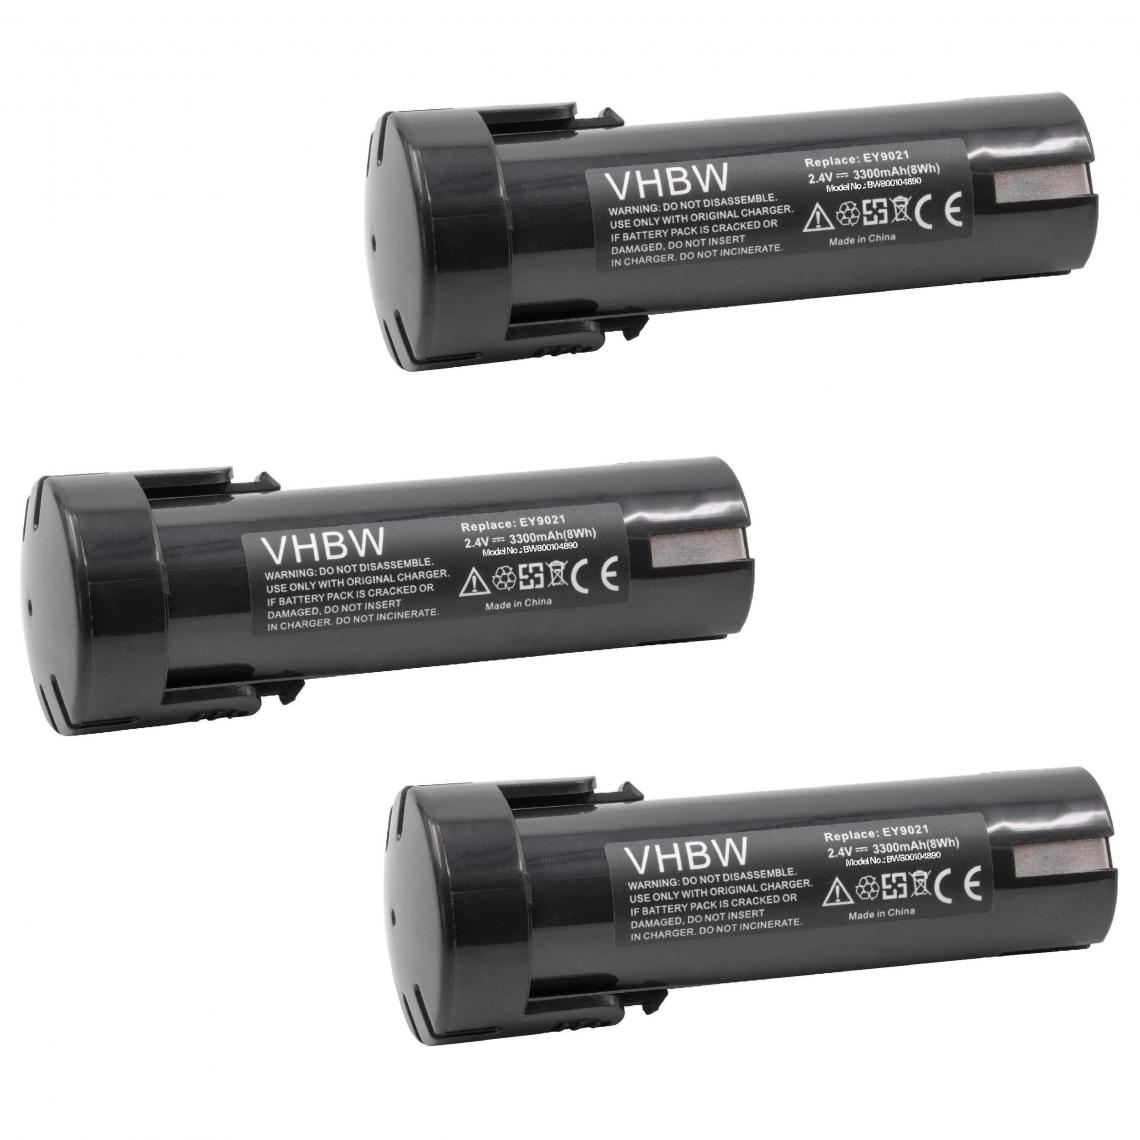 Vhbw - vhbw 3x Batterie compatible avec Panasonic EY6220B, EY6220D, EY6220DR, EY9021, EY9021B, EY903 outil électrique (3300mAh NiMH 2,4V) - Clouterie